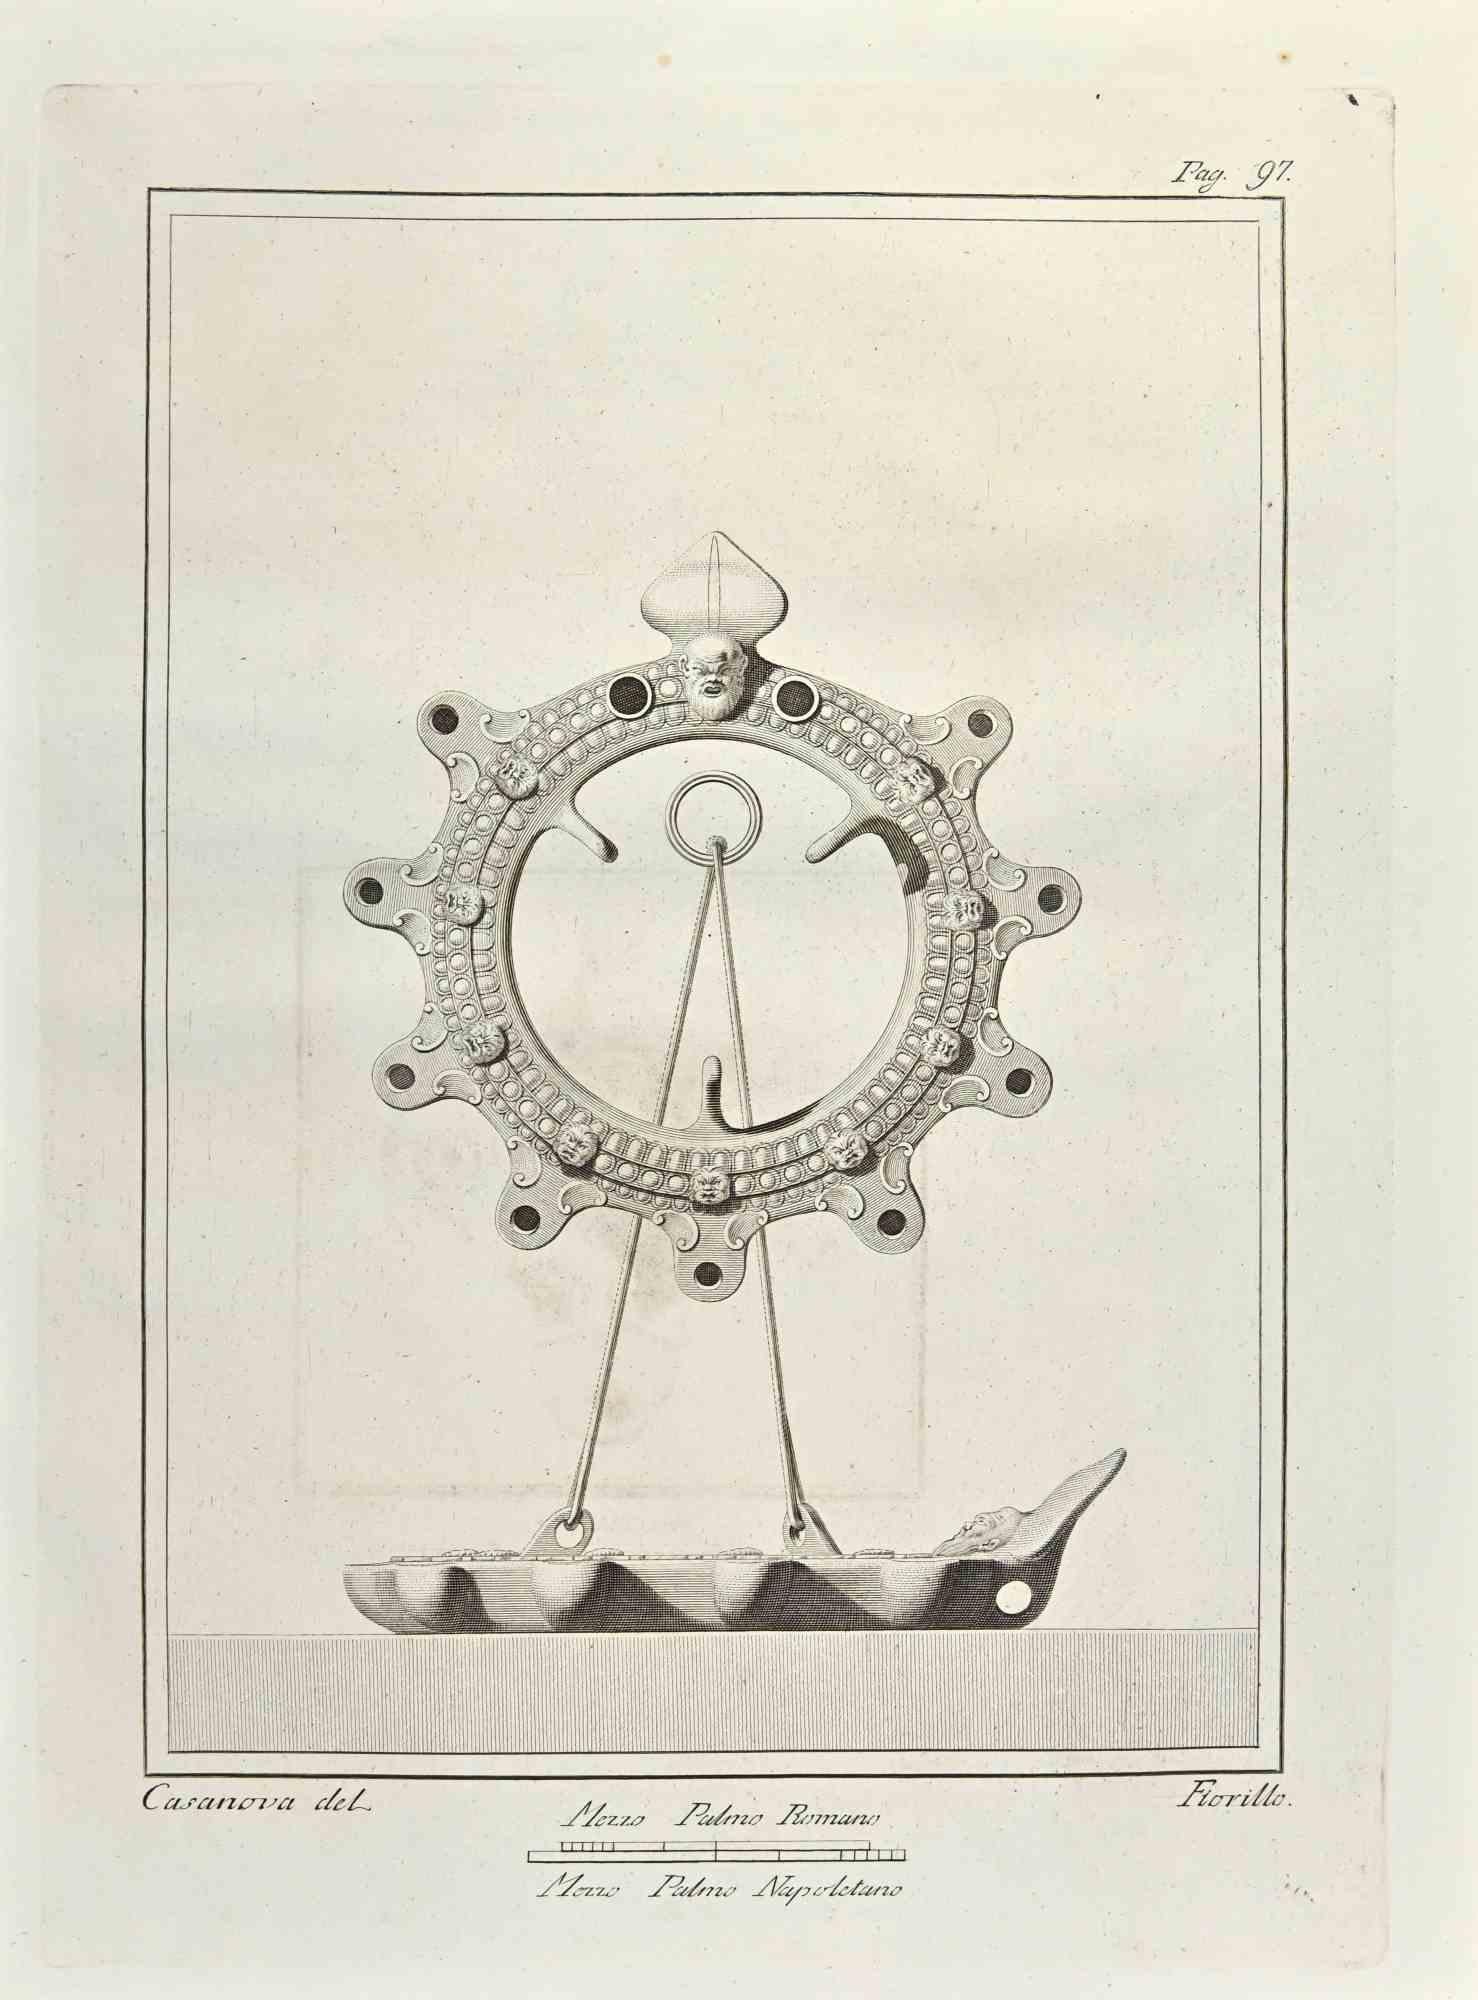 Lampes à huile  "Soleil et bateau" des "Antiquités d'Herculanum" est une gravure sur papier réalisée par Nicola Fiorillo au 18ème siècle.

Signé sur la plaque.

Bonnes conditions.

La gravure appartient à la suite d'estampes "Antiquités d'Herculanum